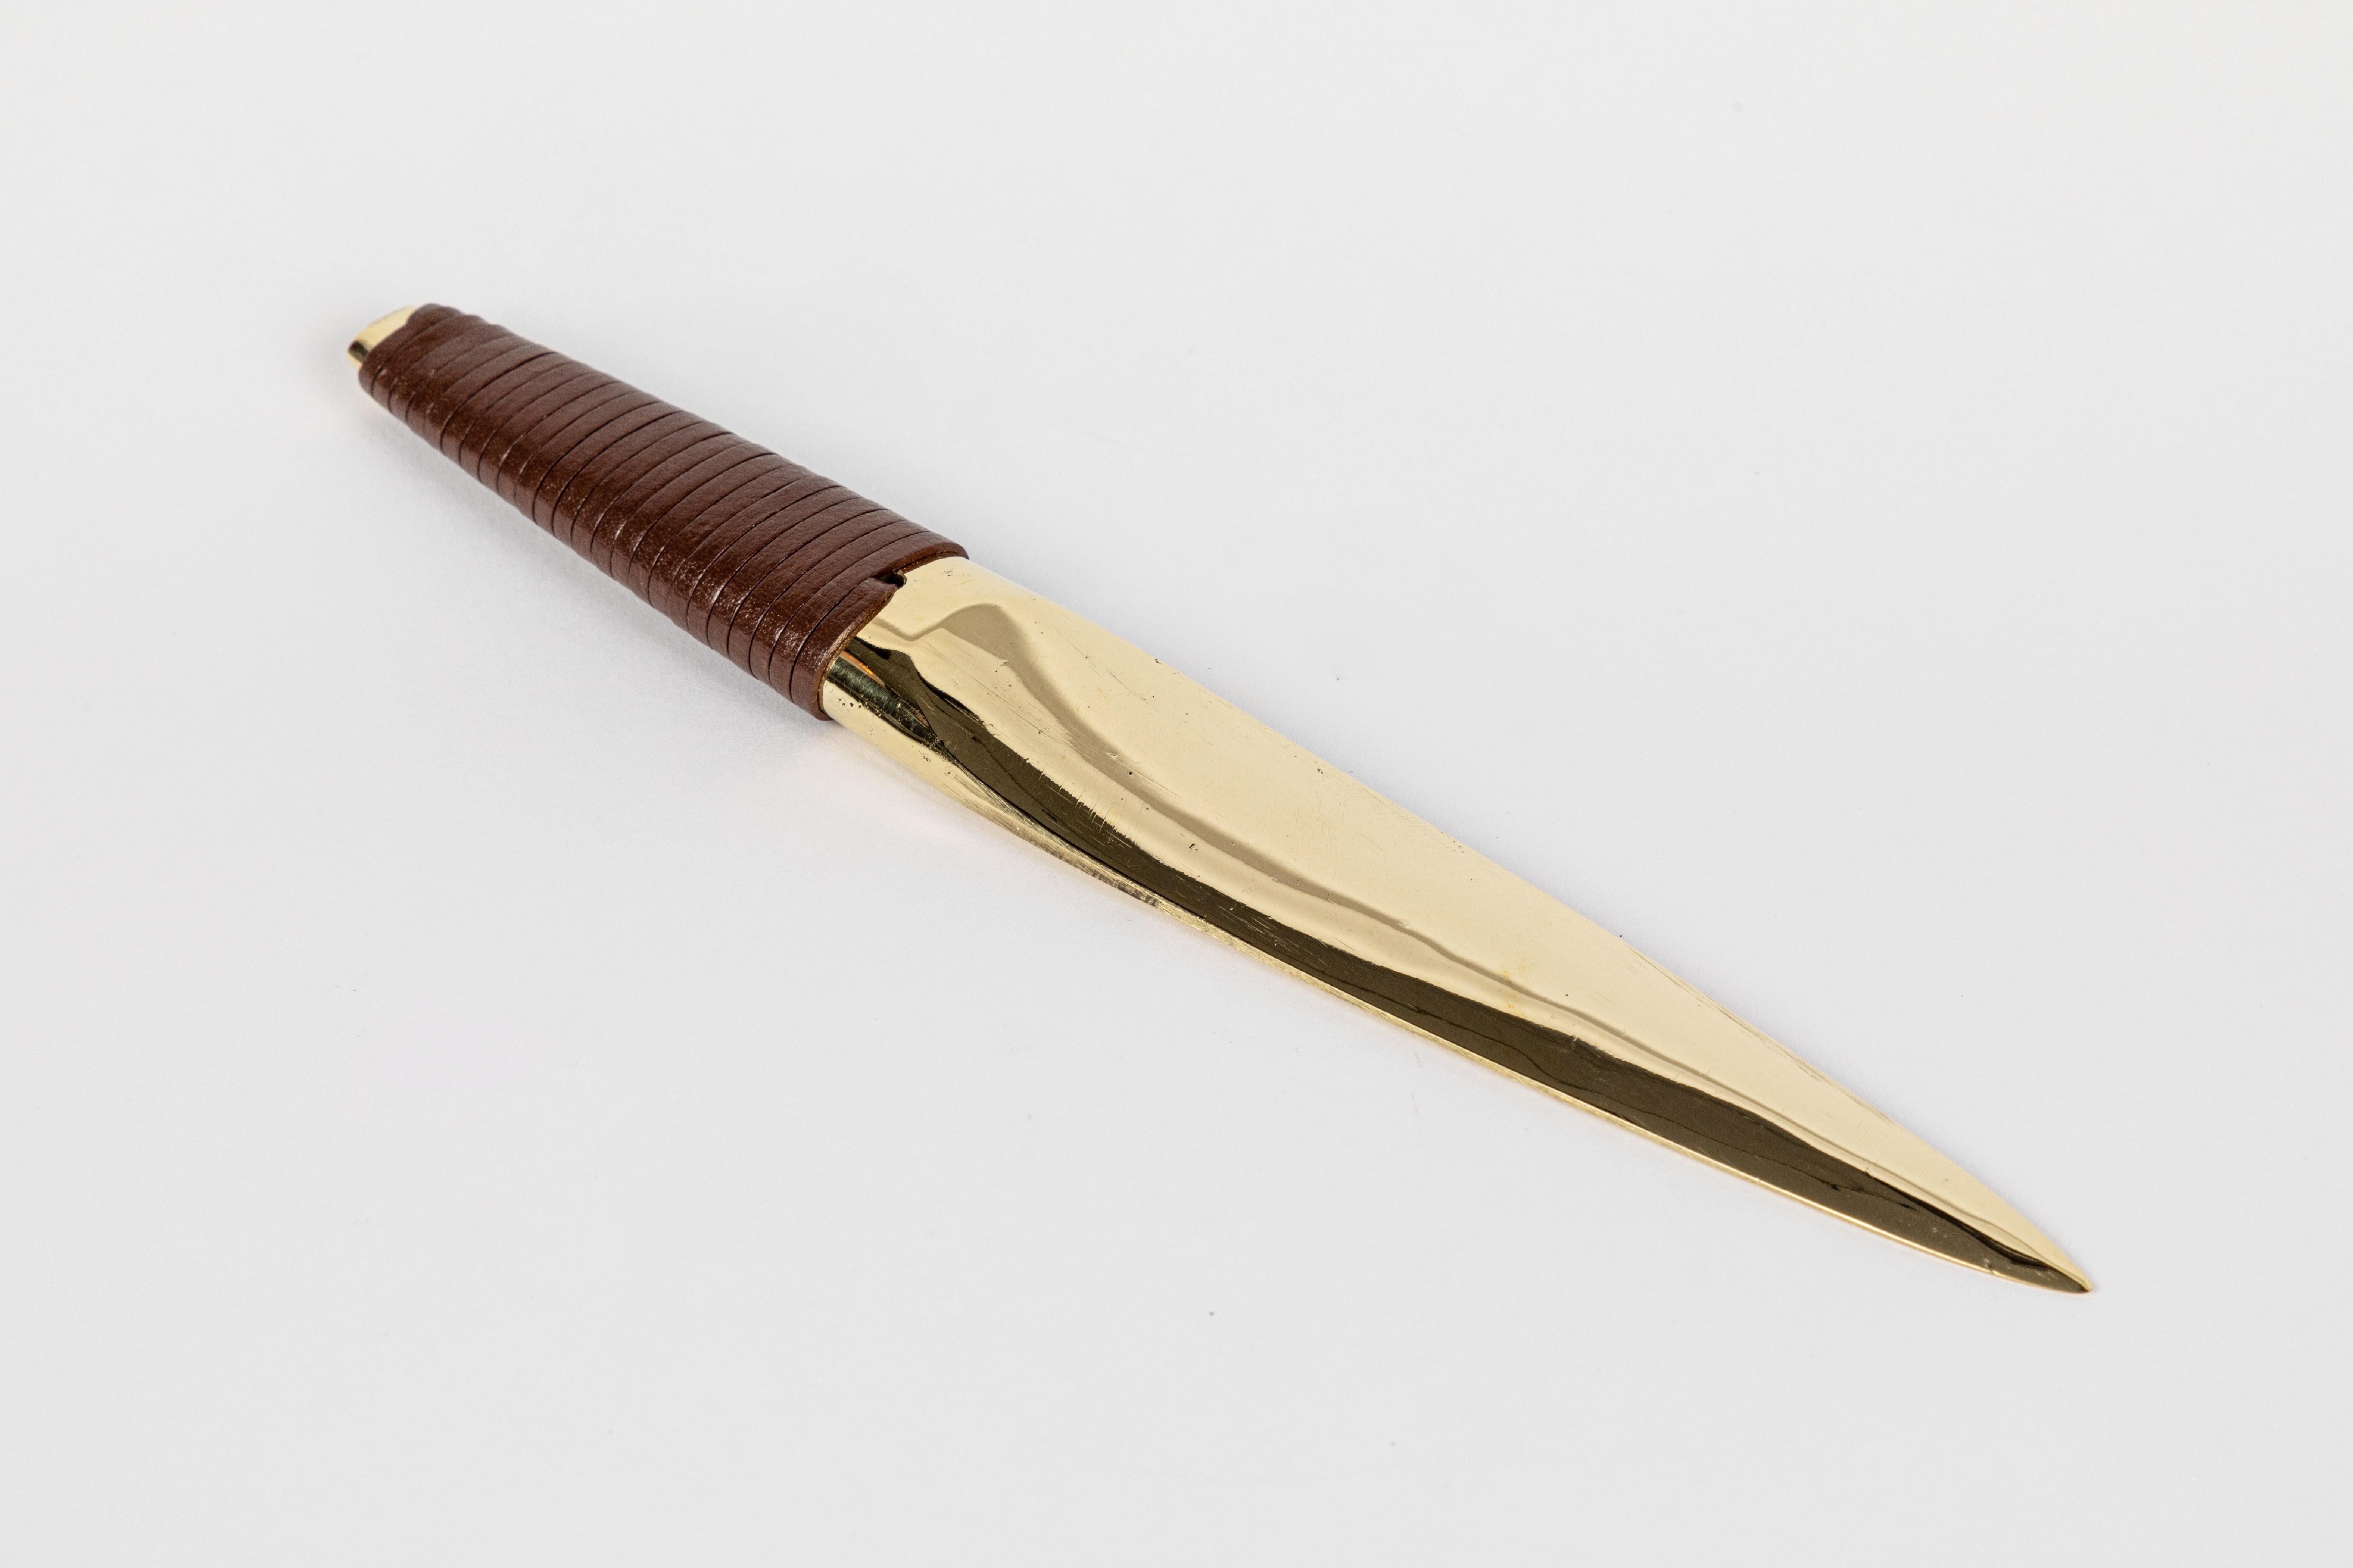 Carl Auböck Modell #4233 Messing und Leder Papiermesser. Dieses in den 1950er Jahren entworfene, unglaublich raffinierte und skulpturale Messer ist aus poliertem Messing und handgewebtem braunem Leder gefertigt. 

Der Preis gilt pro Stück. Einer auf